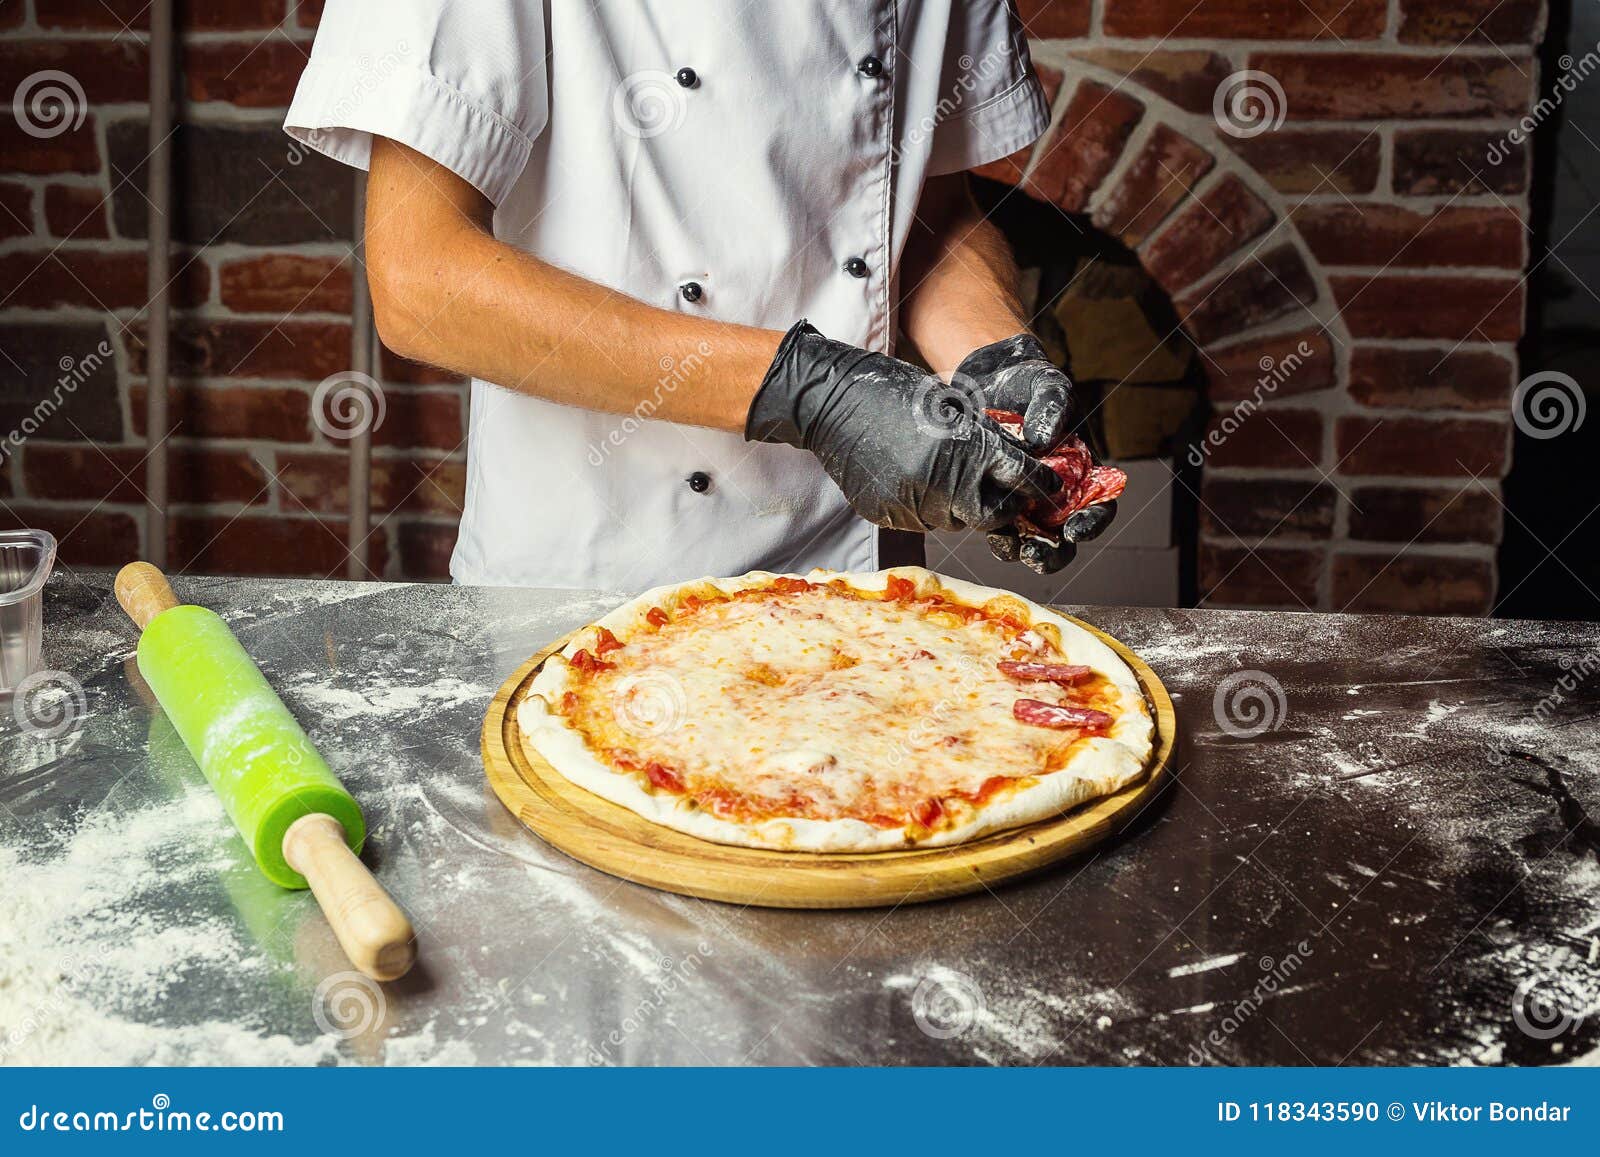 человек который делает тесто для пиццы фото 75